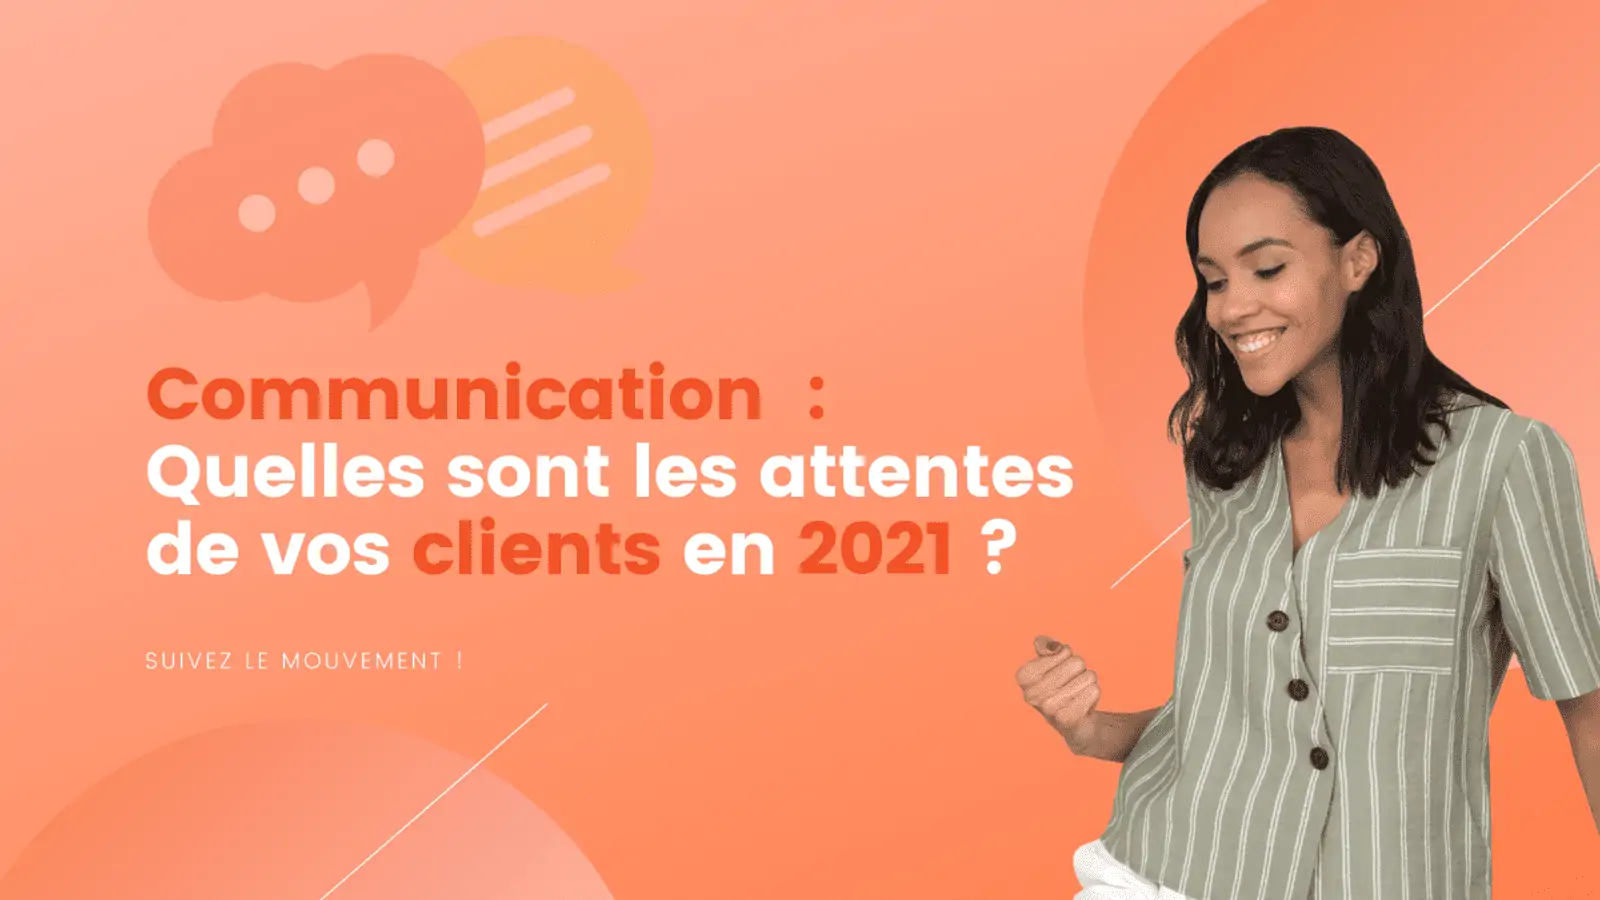 Communication Quelles sont les attentes de vos clients en 2021 ? Agence IDEO ROUEN